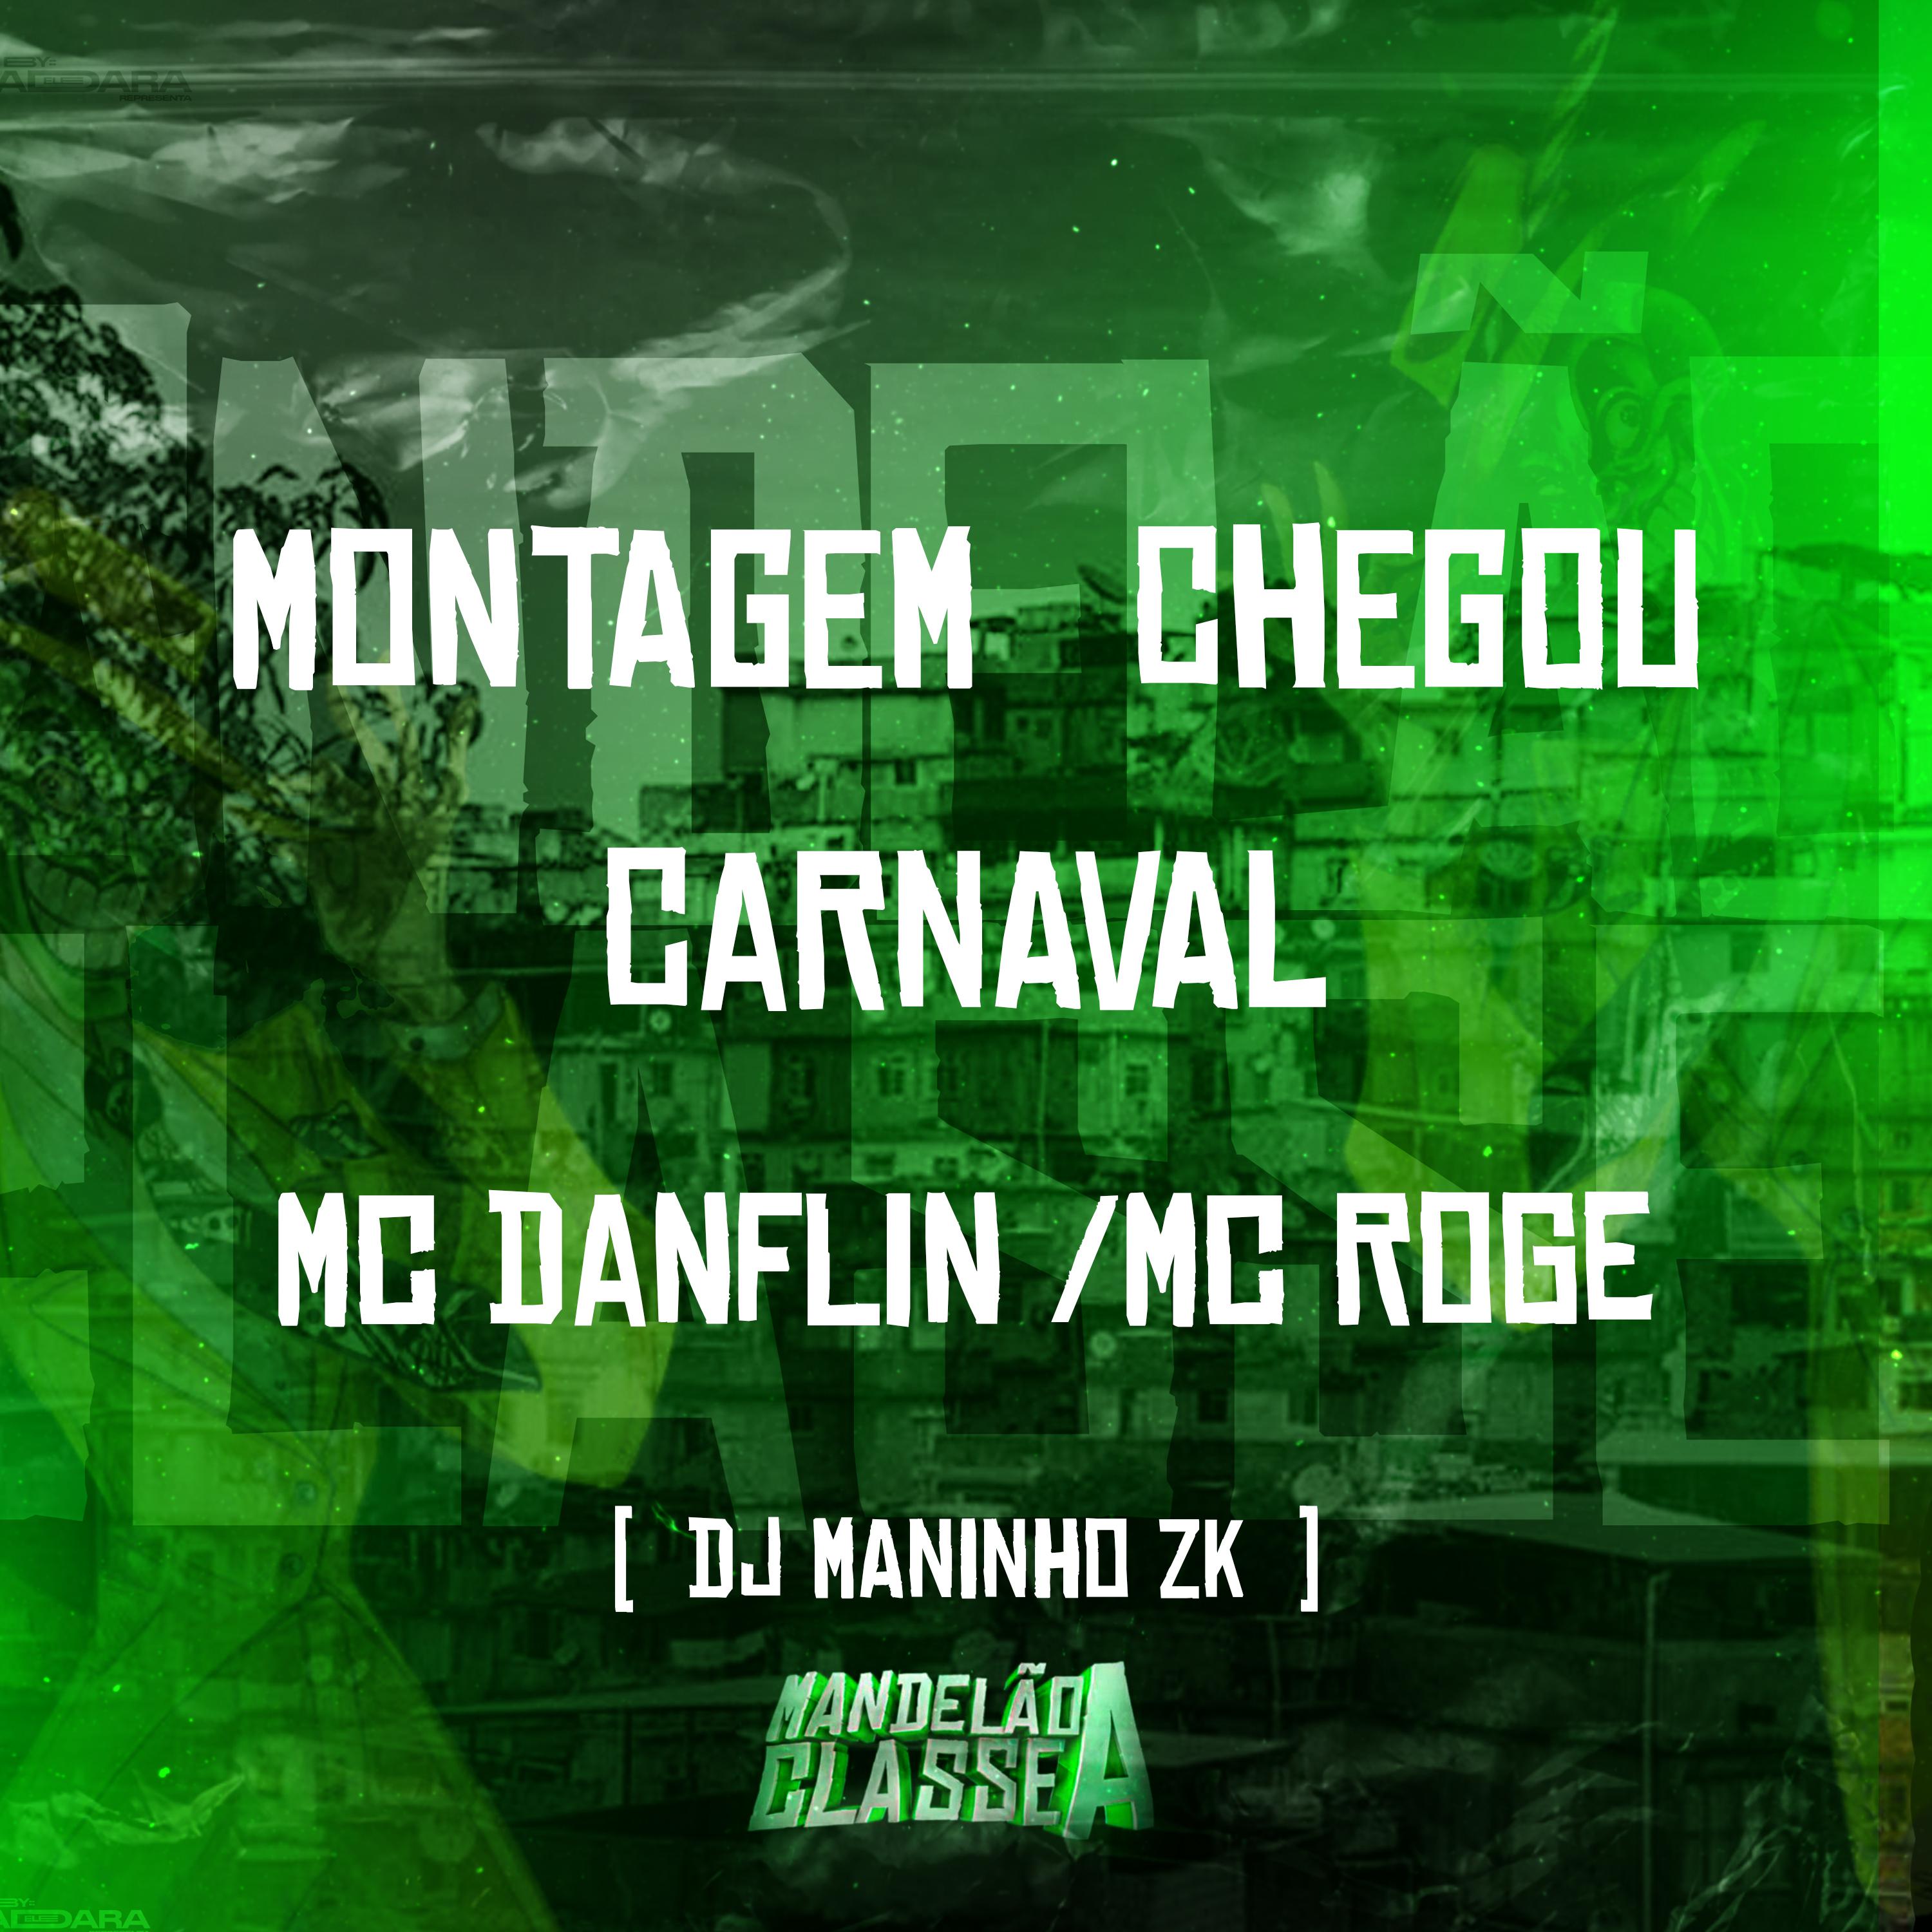 DJ Maninho ZK - Montagem Chegou Carnaval